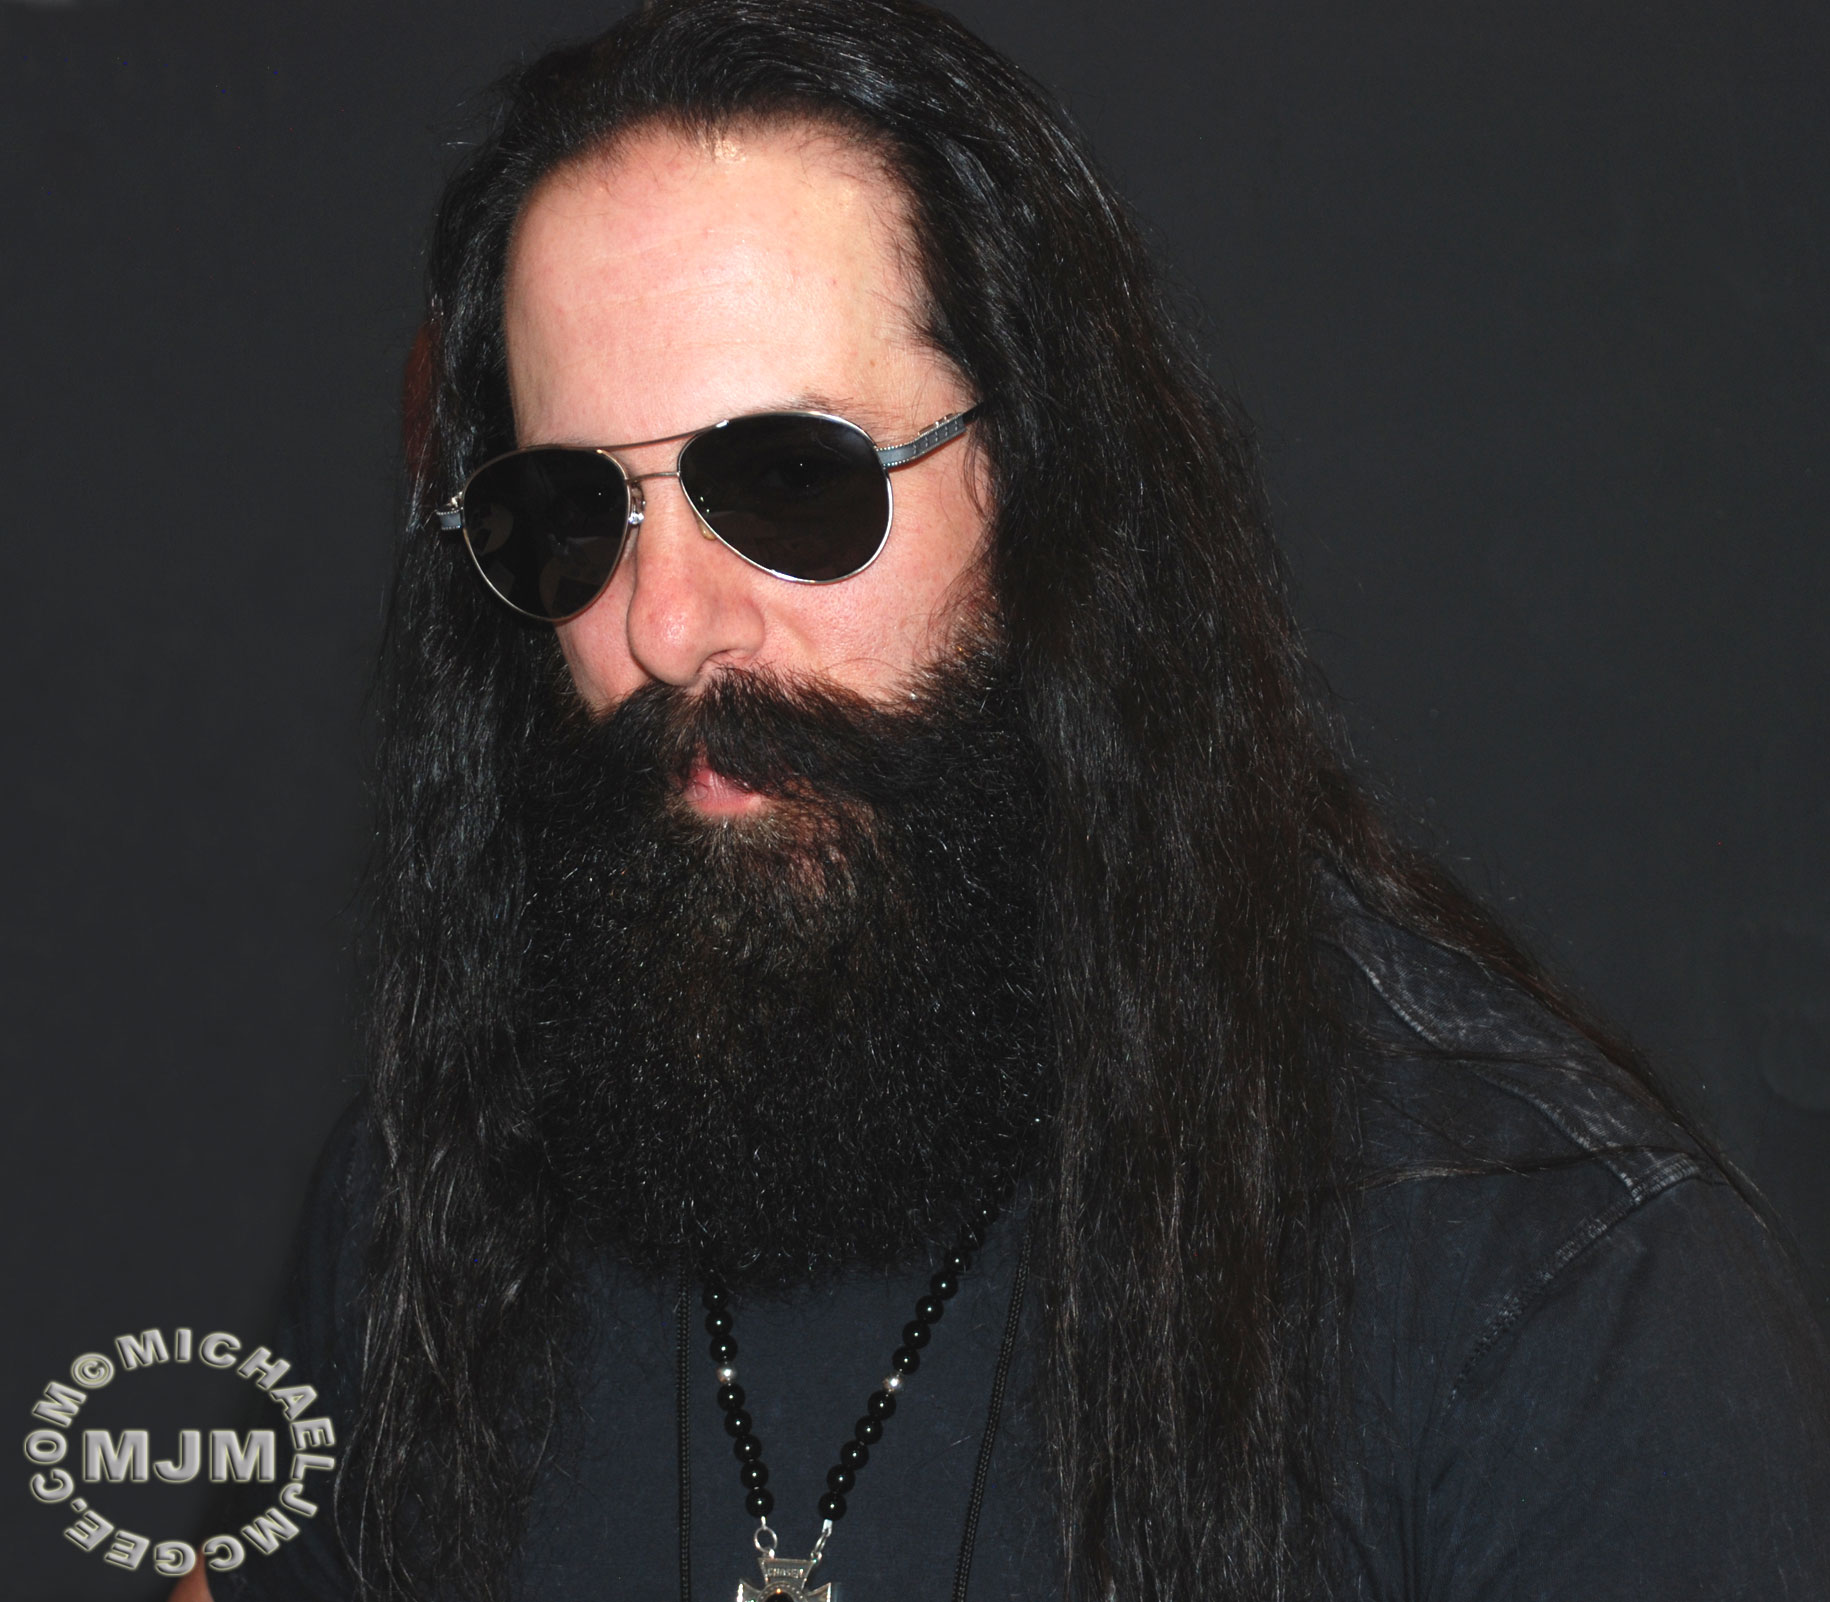 John Petrucci / michaeljmcgee.com